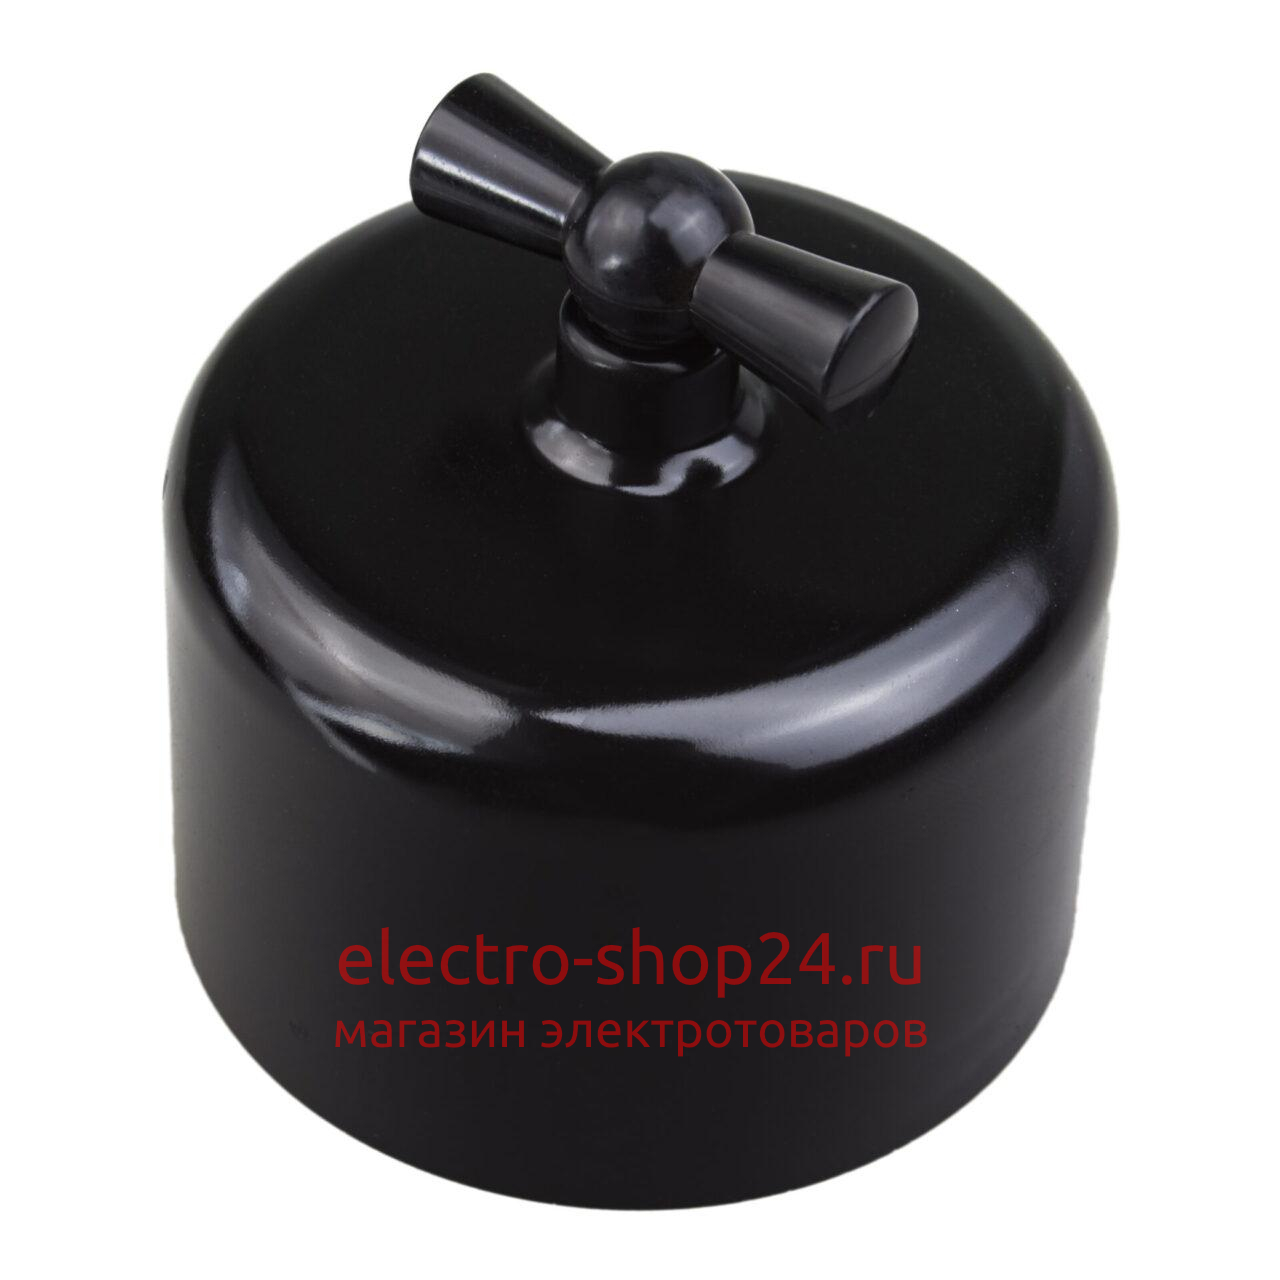 Выключатель 2-клавишный Bironi Ришелье пластик черный R1-212-23 R1-212-23 - магазин электротехники Electroshop